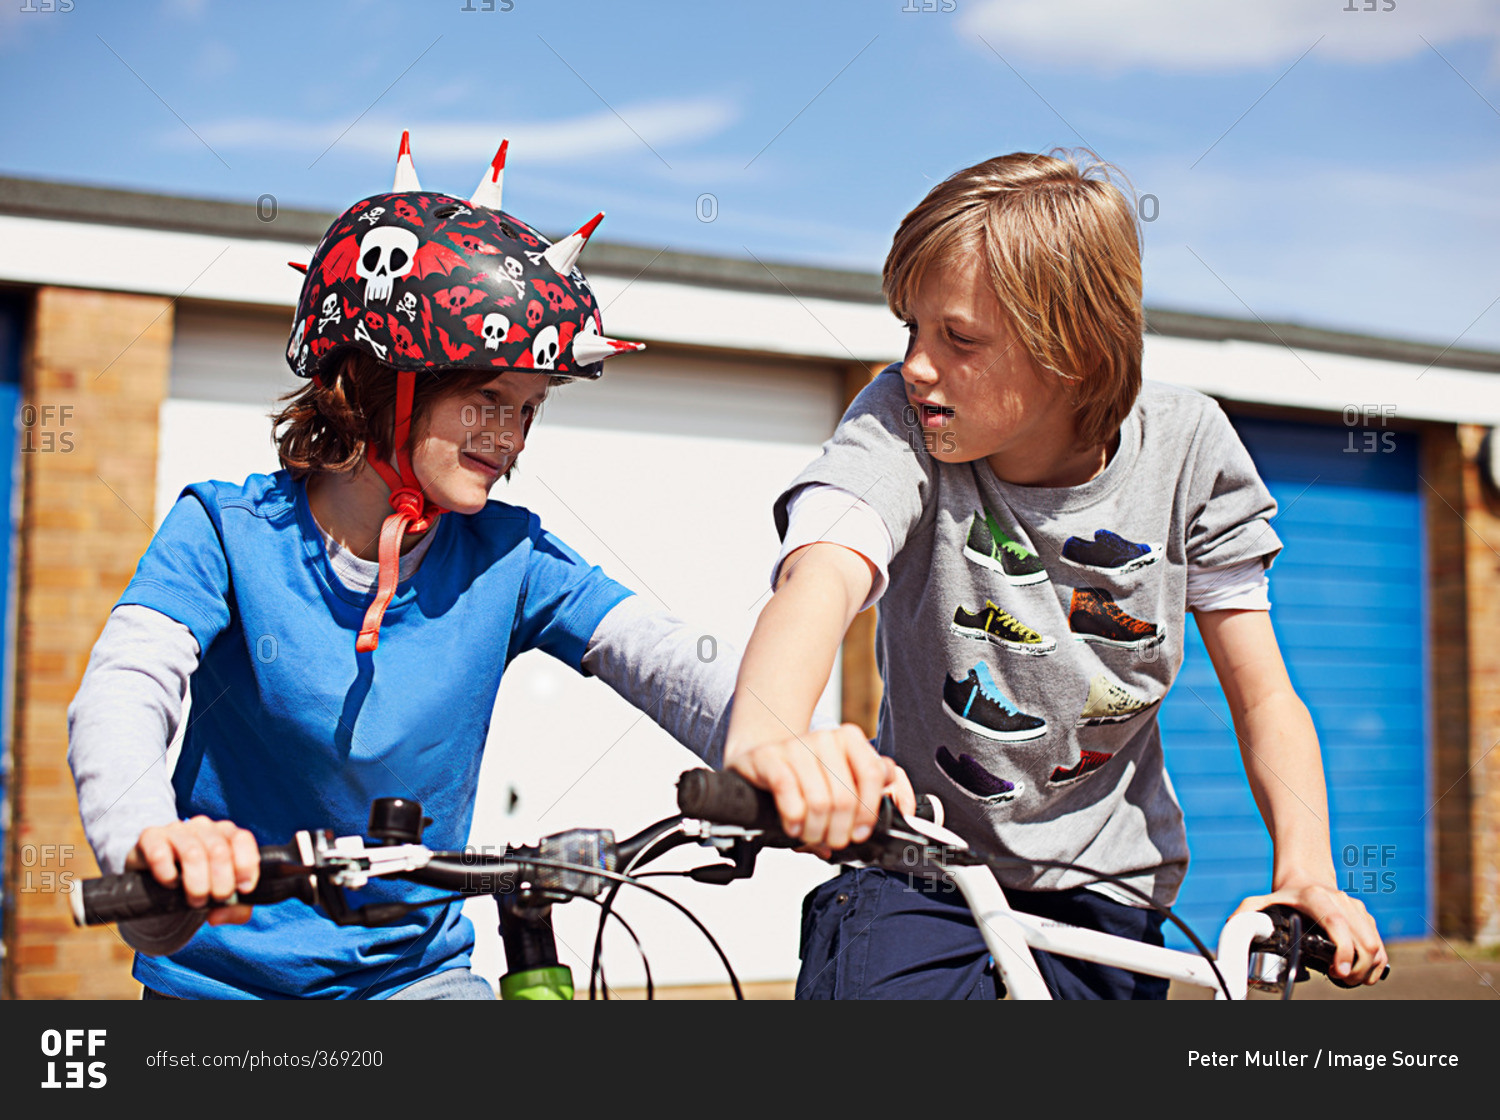 Two boys on bikes